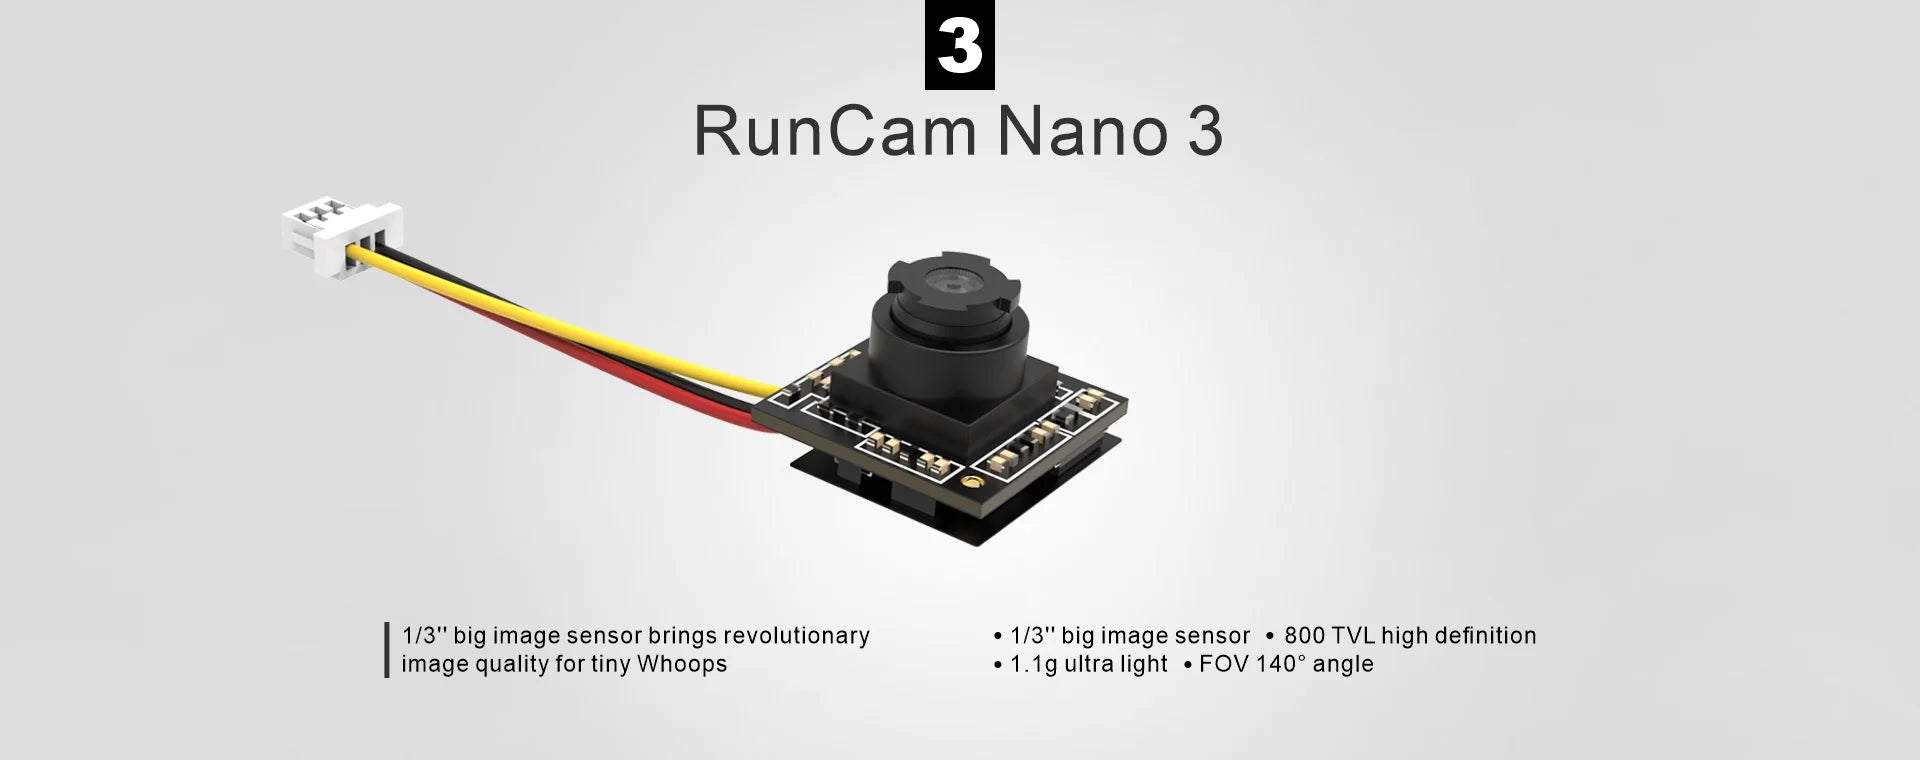 Runcam Nano 3 Analog Camera, 3 RunCam Nano brings revolutionary 1/3" big image sensor 800 TVL high definition image quality